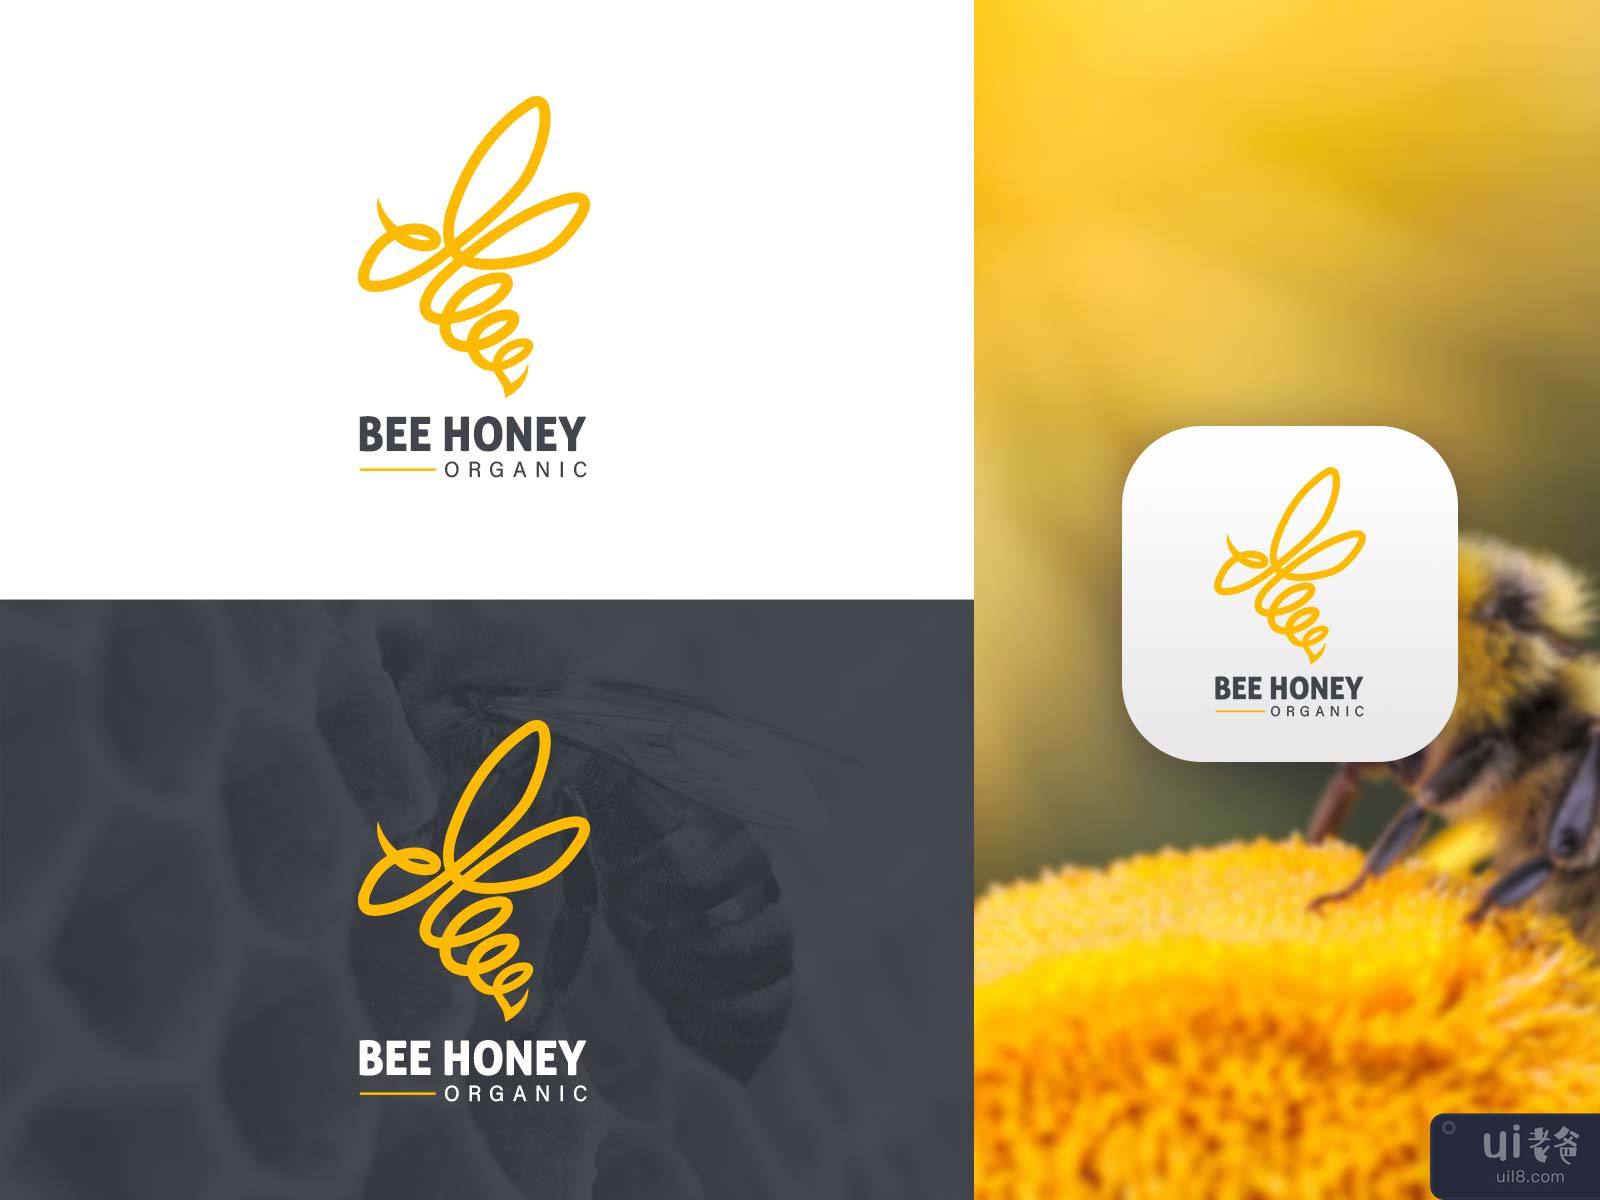 Bee Honey🍯 Organic Branding Shot✨